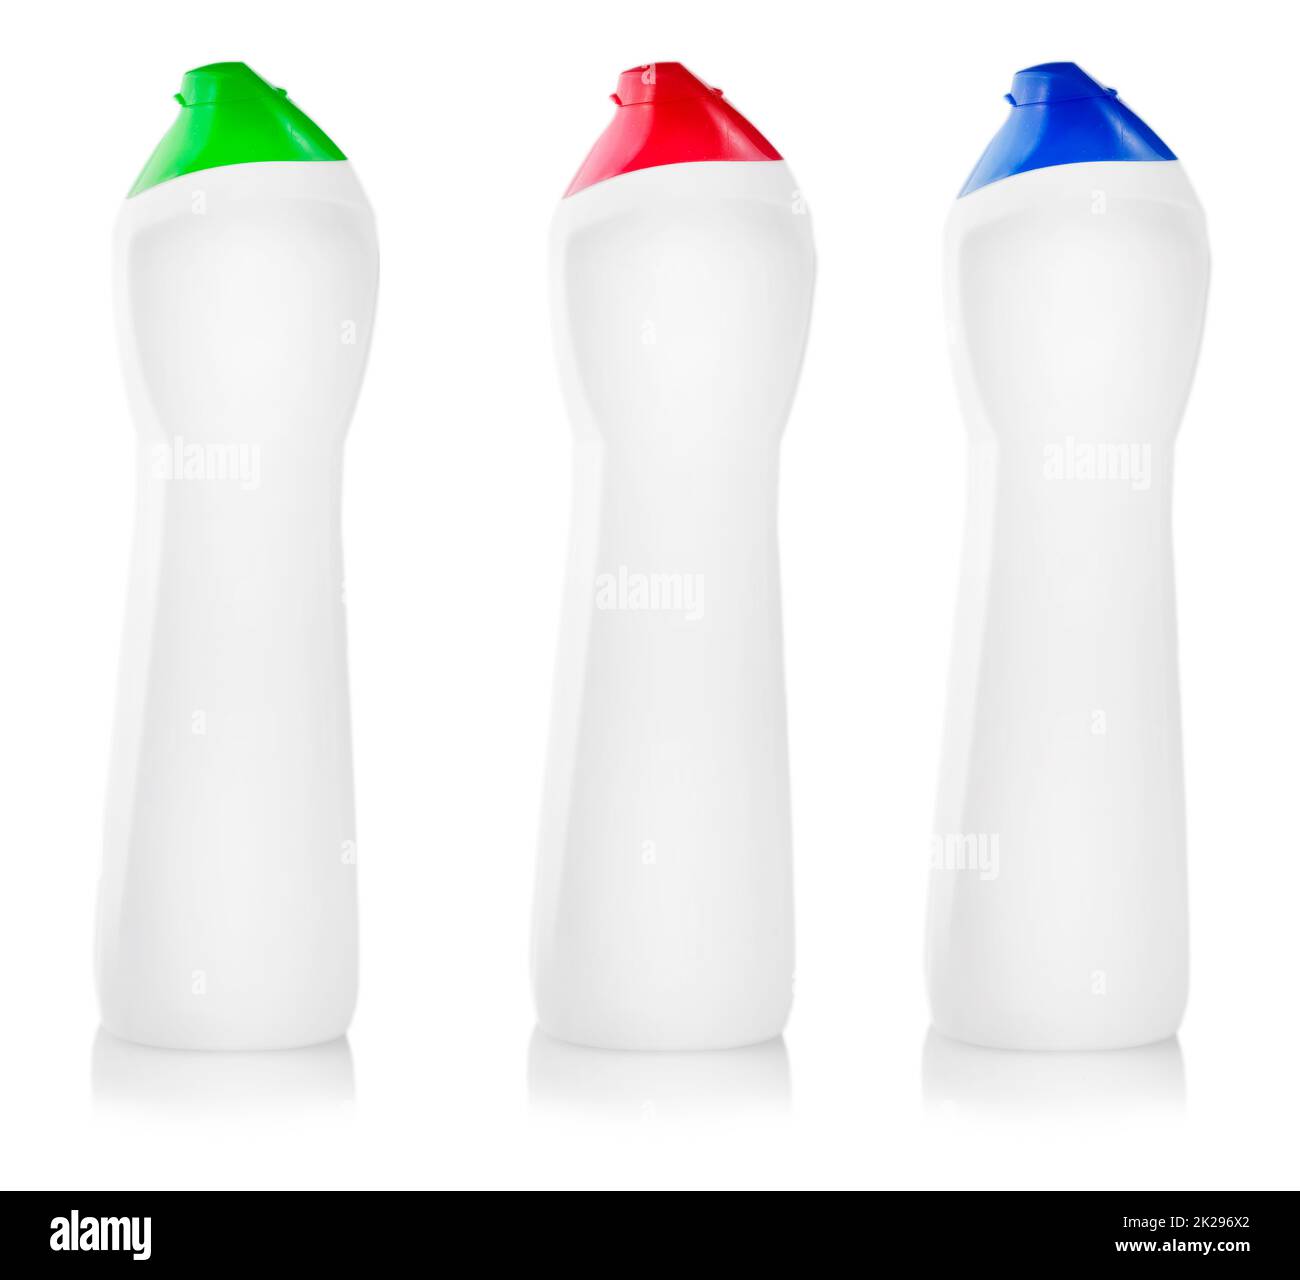 Detergente universale. Fotografia di una bottiglia di plastica bianca con detersivo liquido per bucato, detergente, candeggina o ammorbidente per tessuti - isolata su sfondo bianco Foto Stock